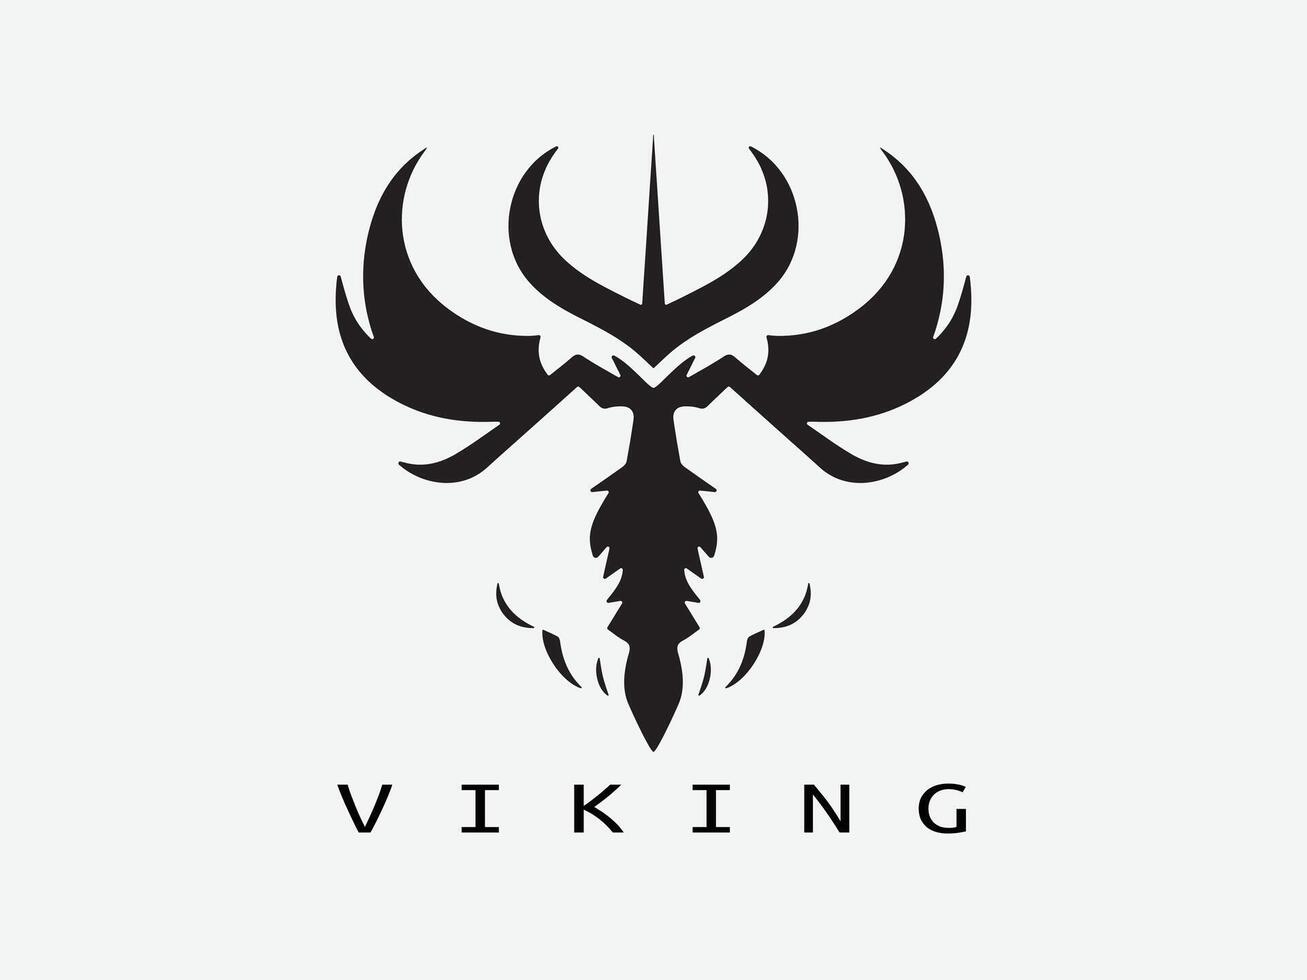 vikingo logo diseño icono símbolo vector ilustración